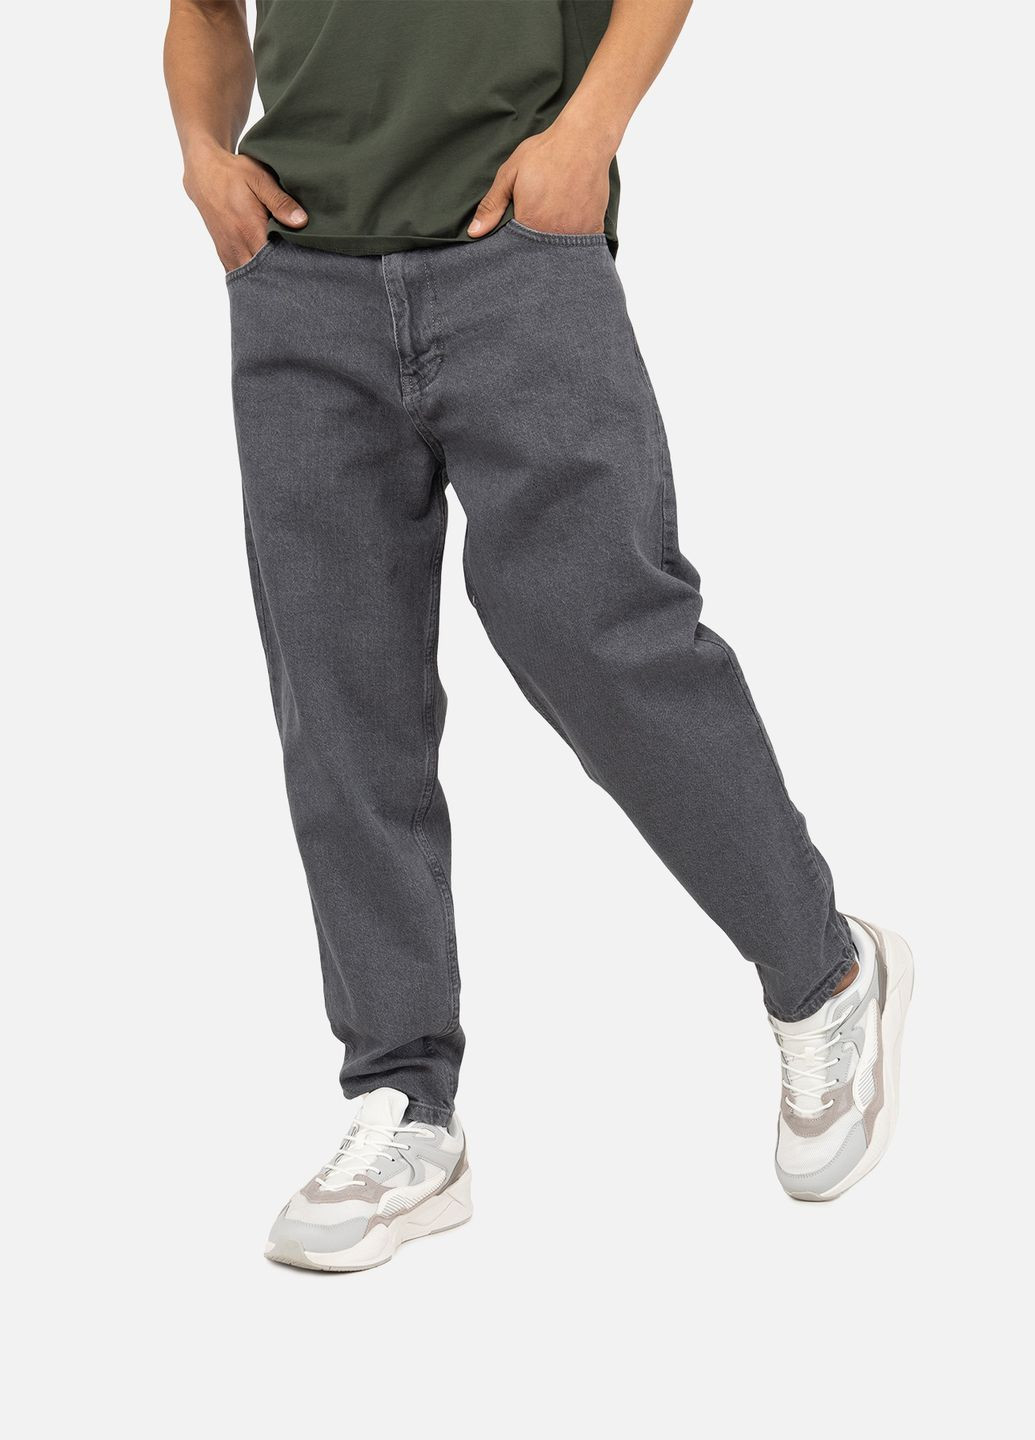 Серые демисезонные мужские джинсы цвет серый цб-00245481 BIG GASTINO